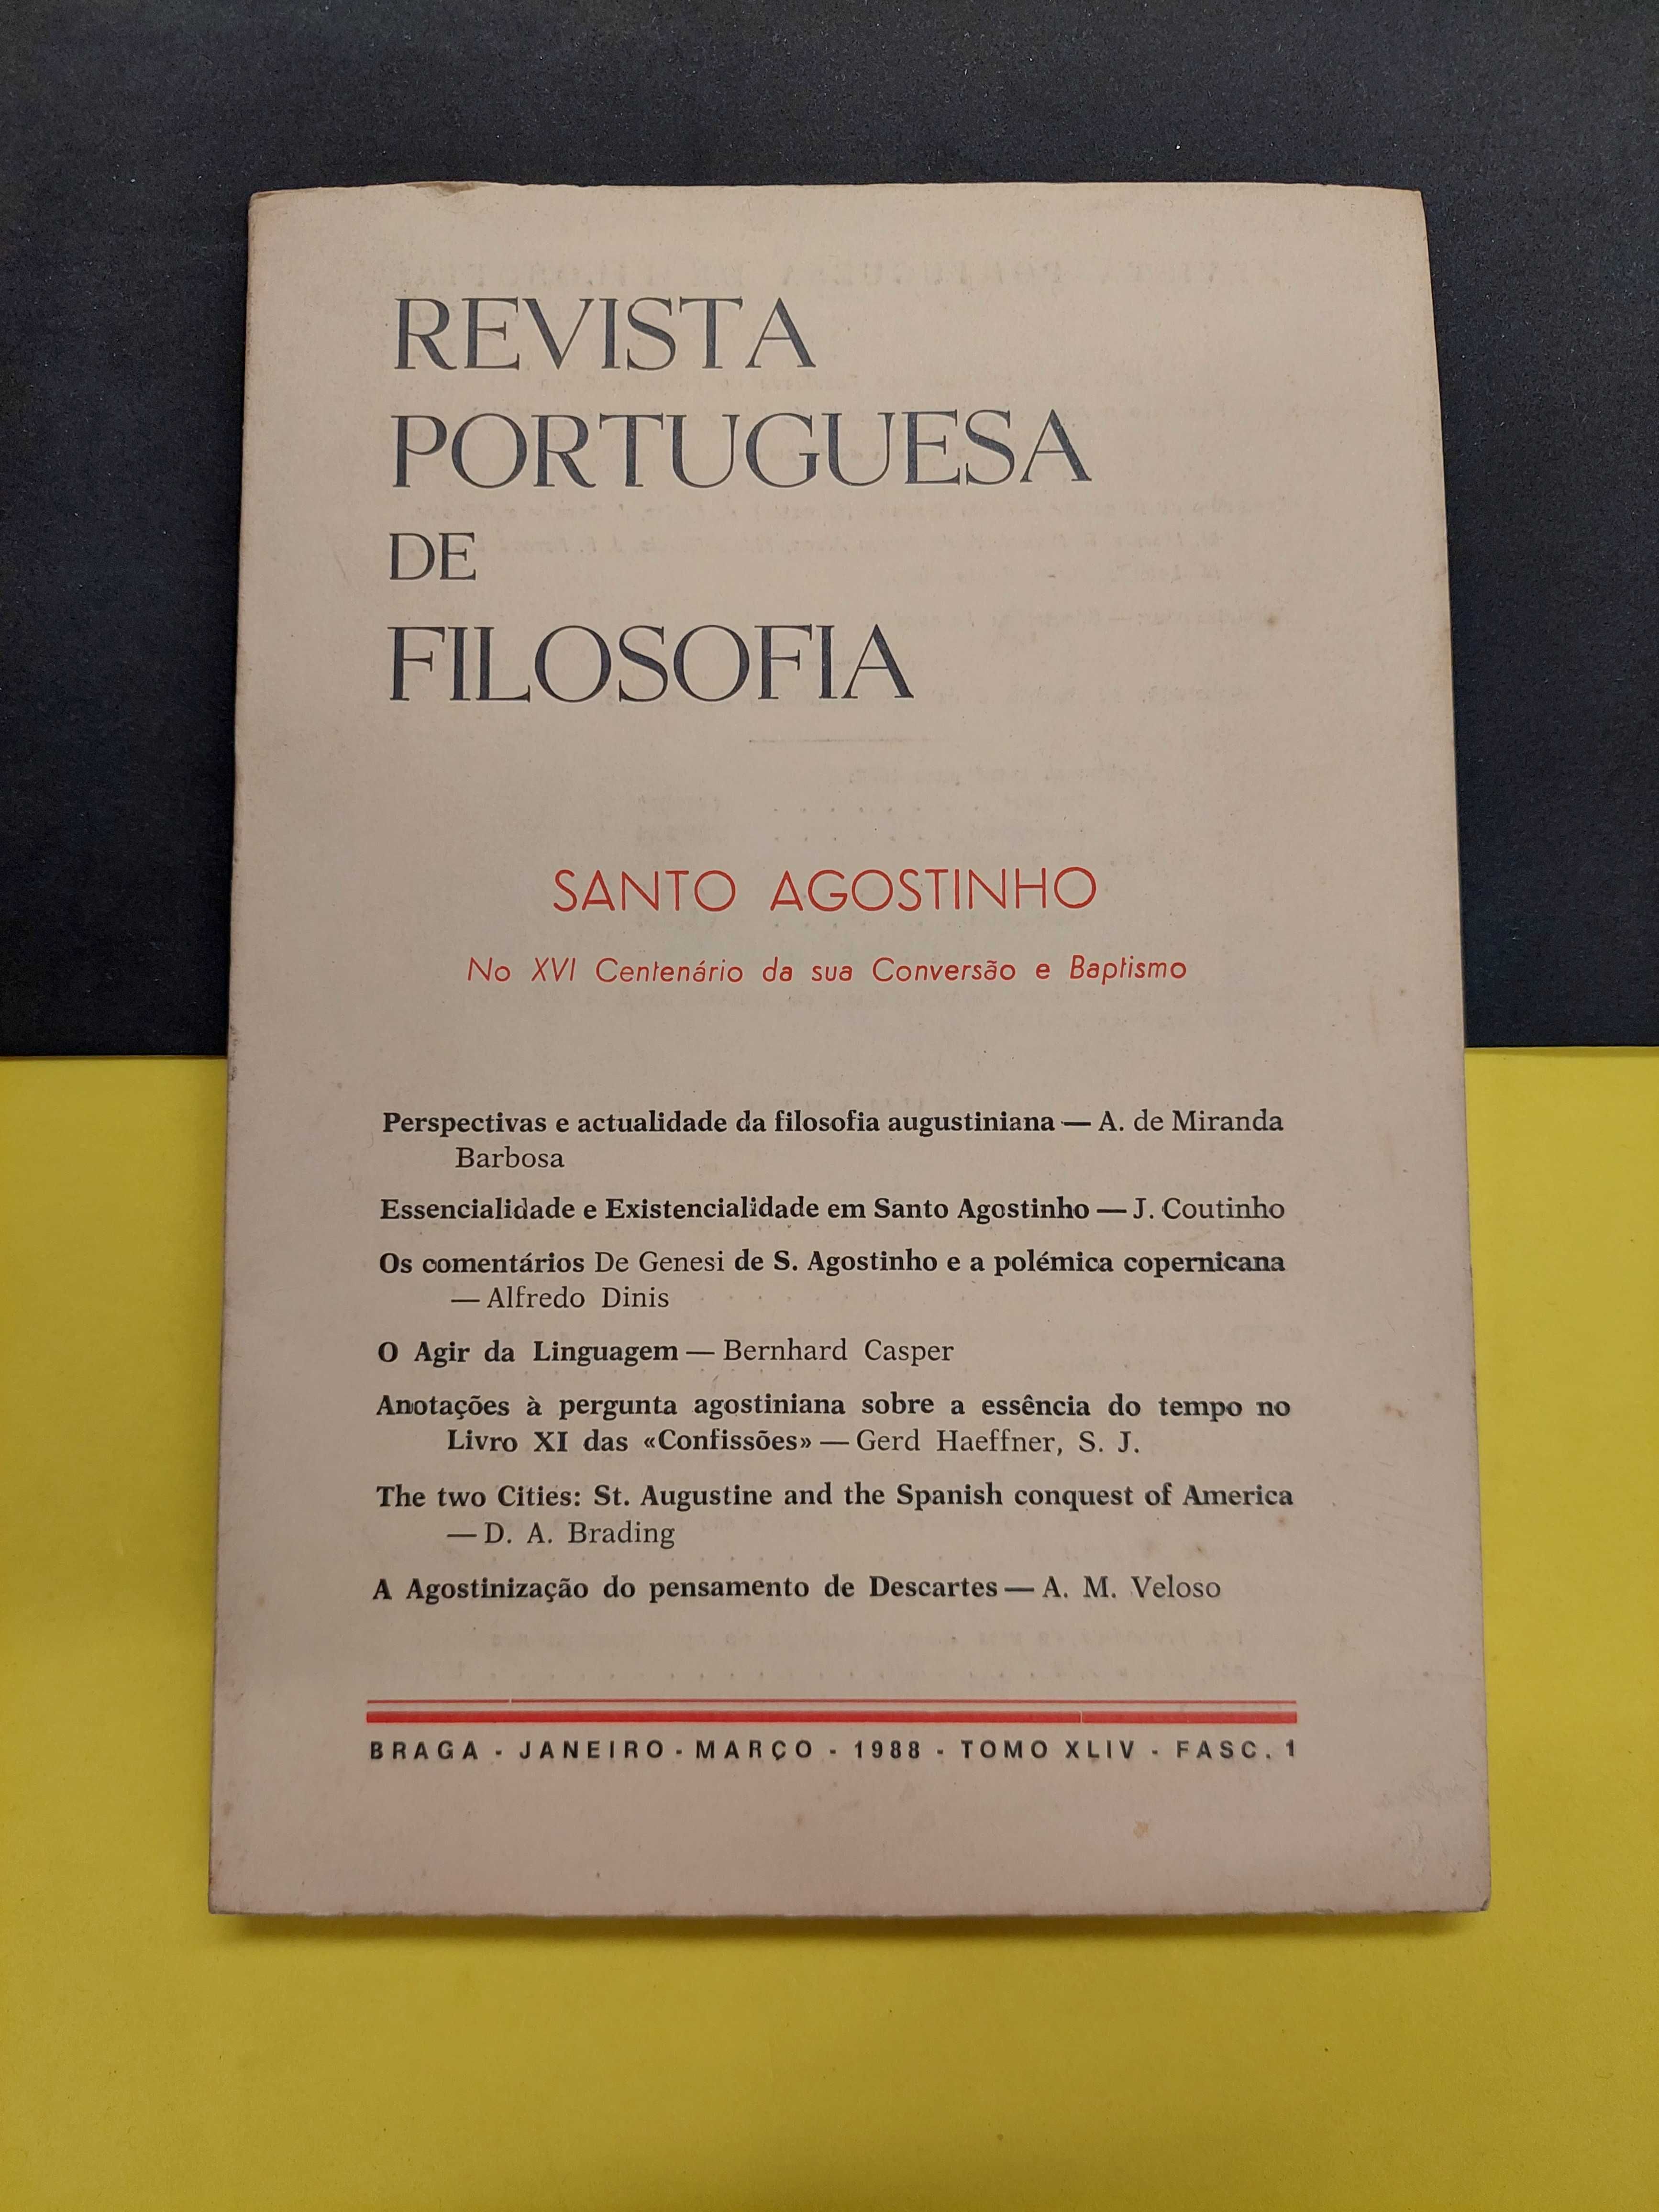 Revista Portuguesa de Filosofia, tomo XLIV, Fasc. 1, 1988